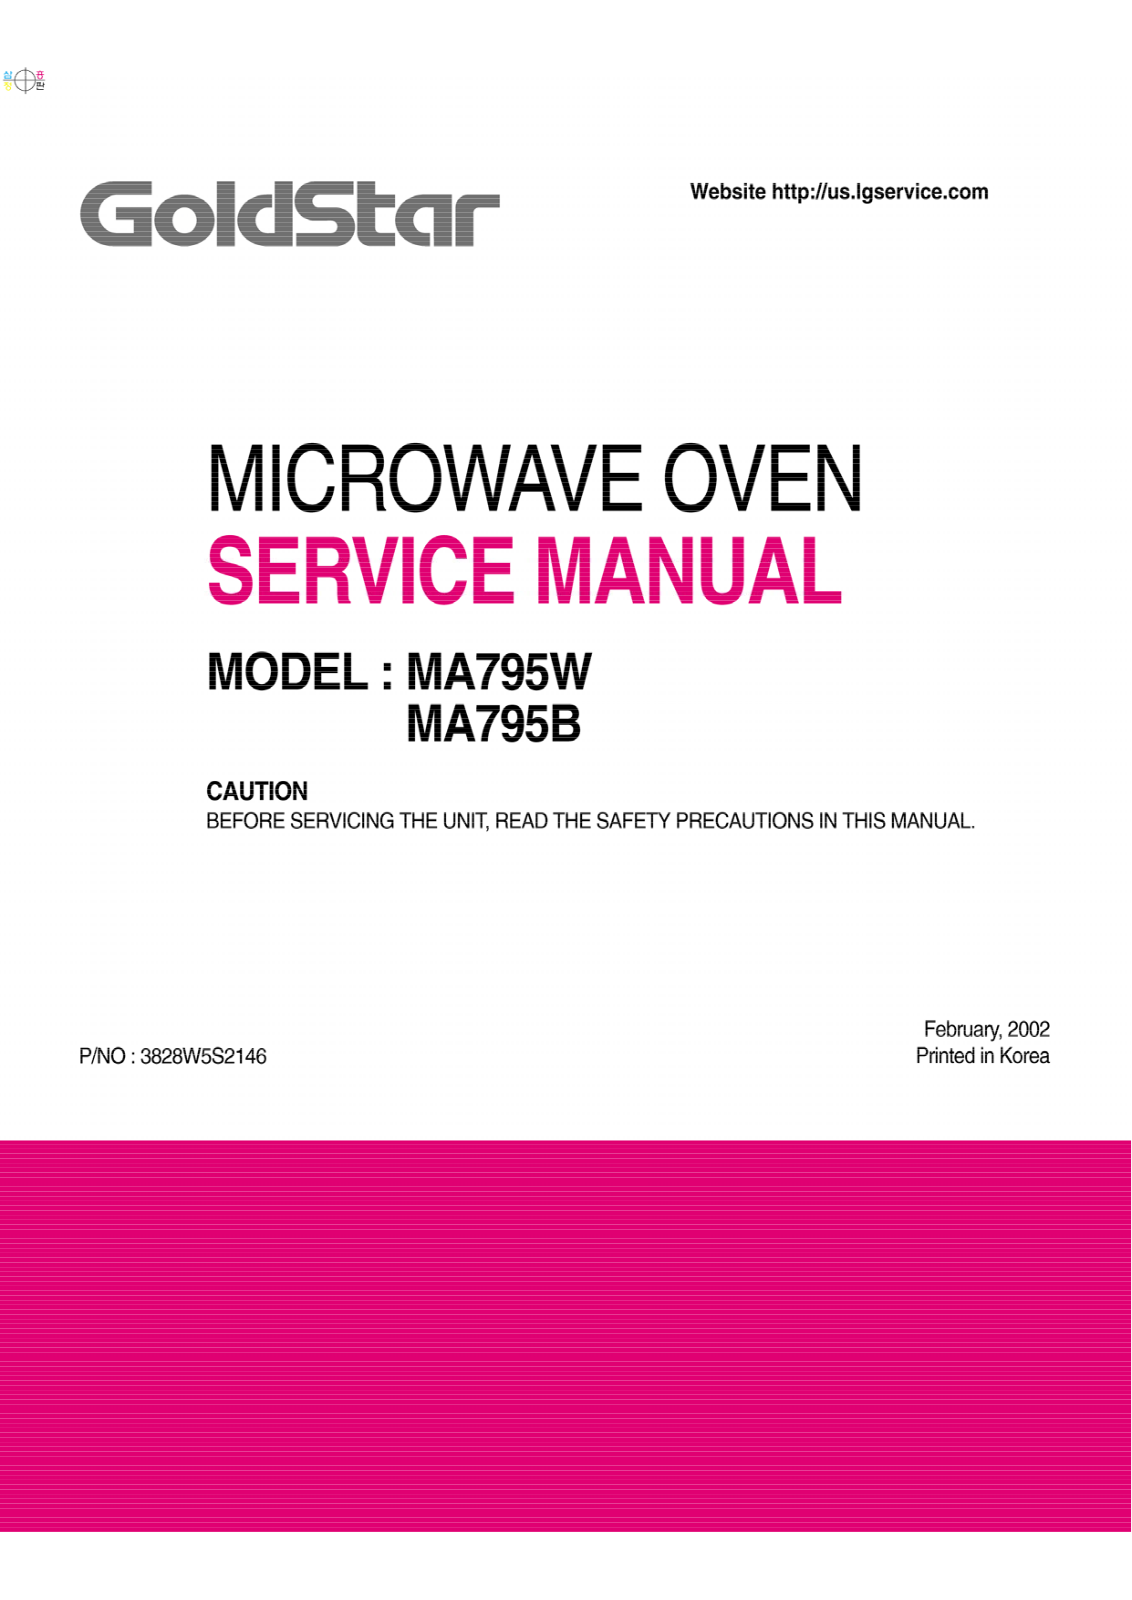 Goldstar Ma795w01, Ma795w, Ma795b Service Manual